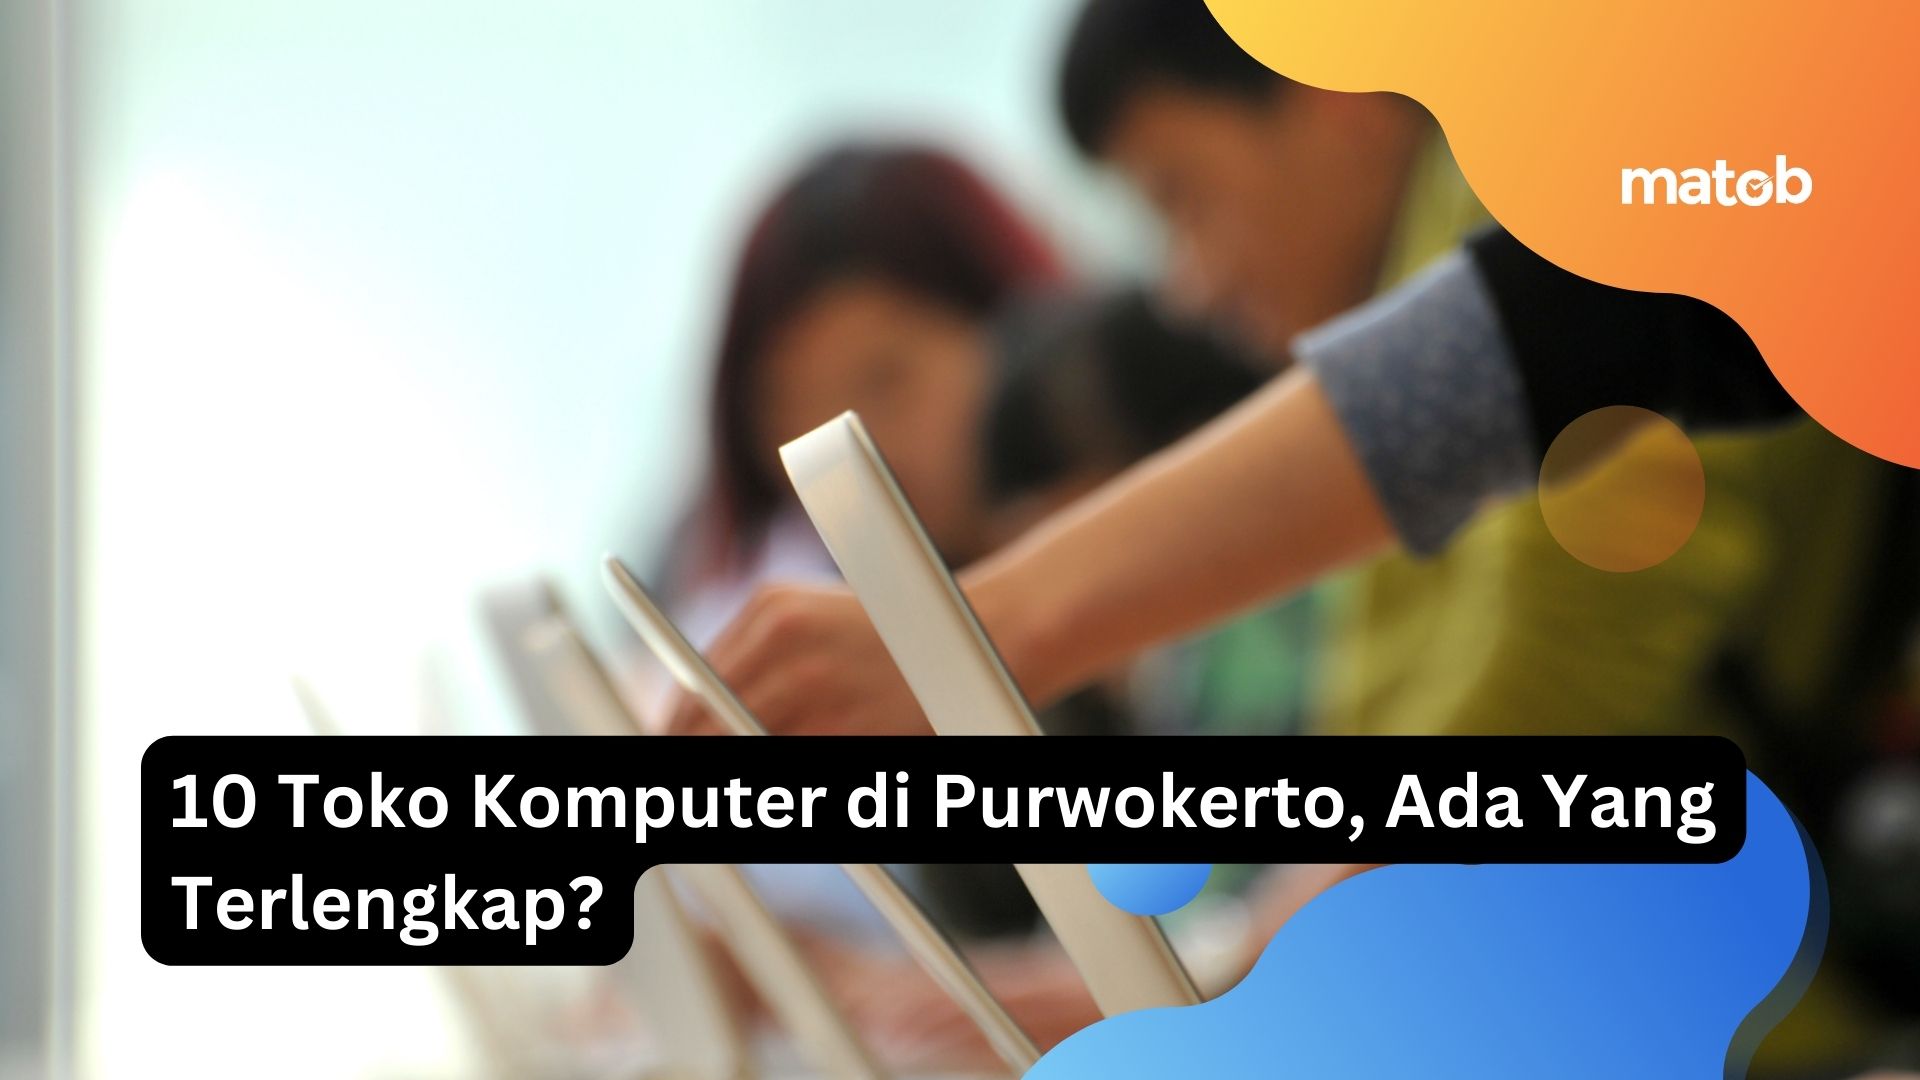 10 Toko Komputer di Purwokerto, Ada Yang Terlengkap?